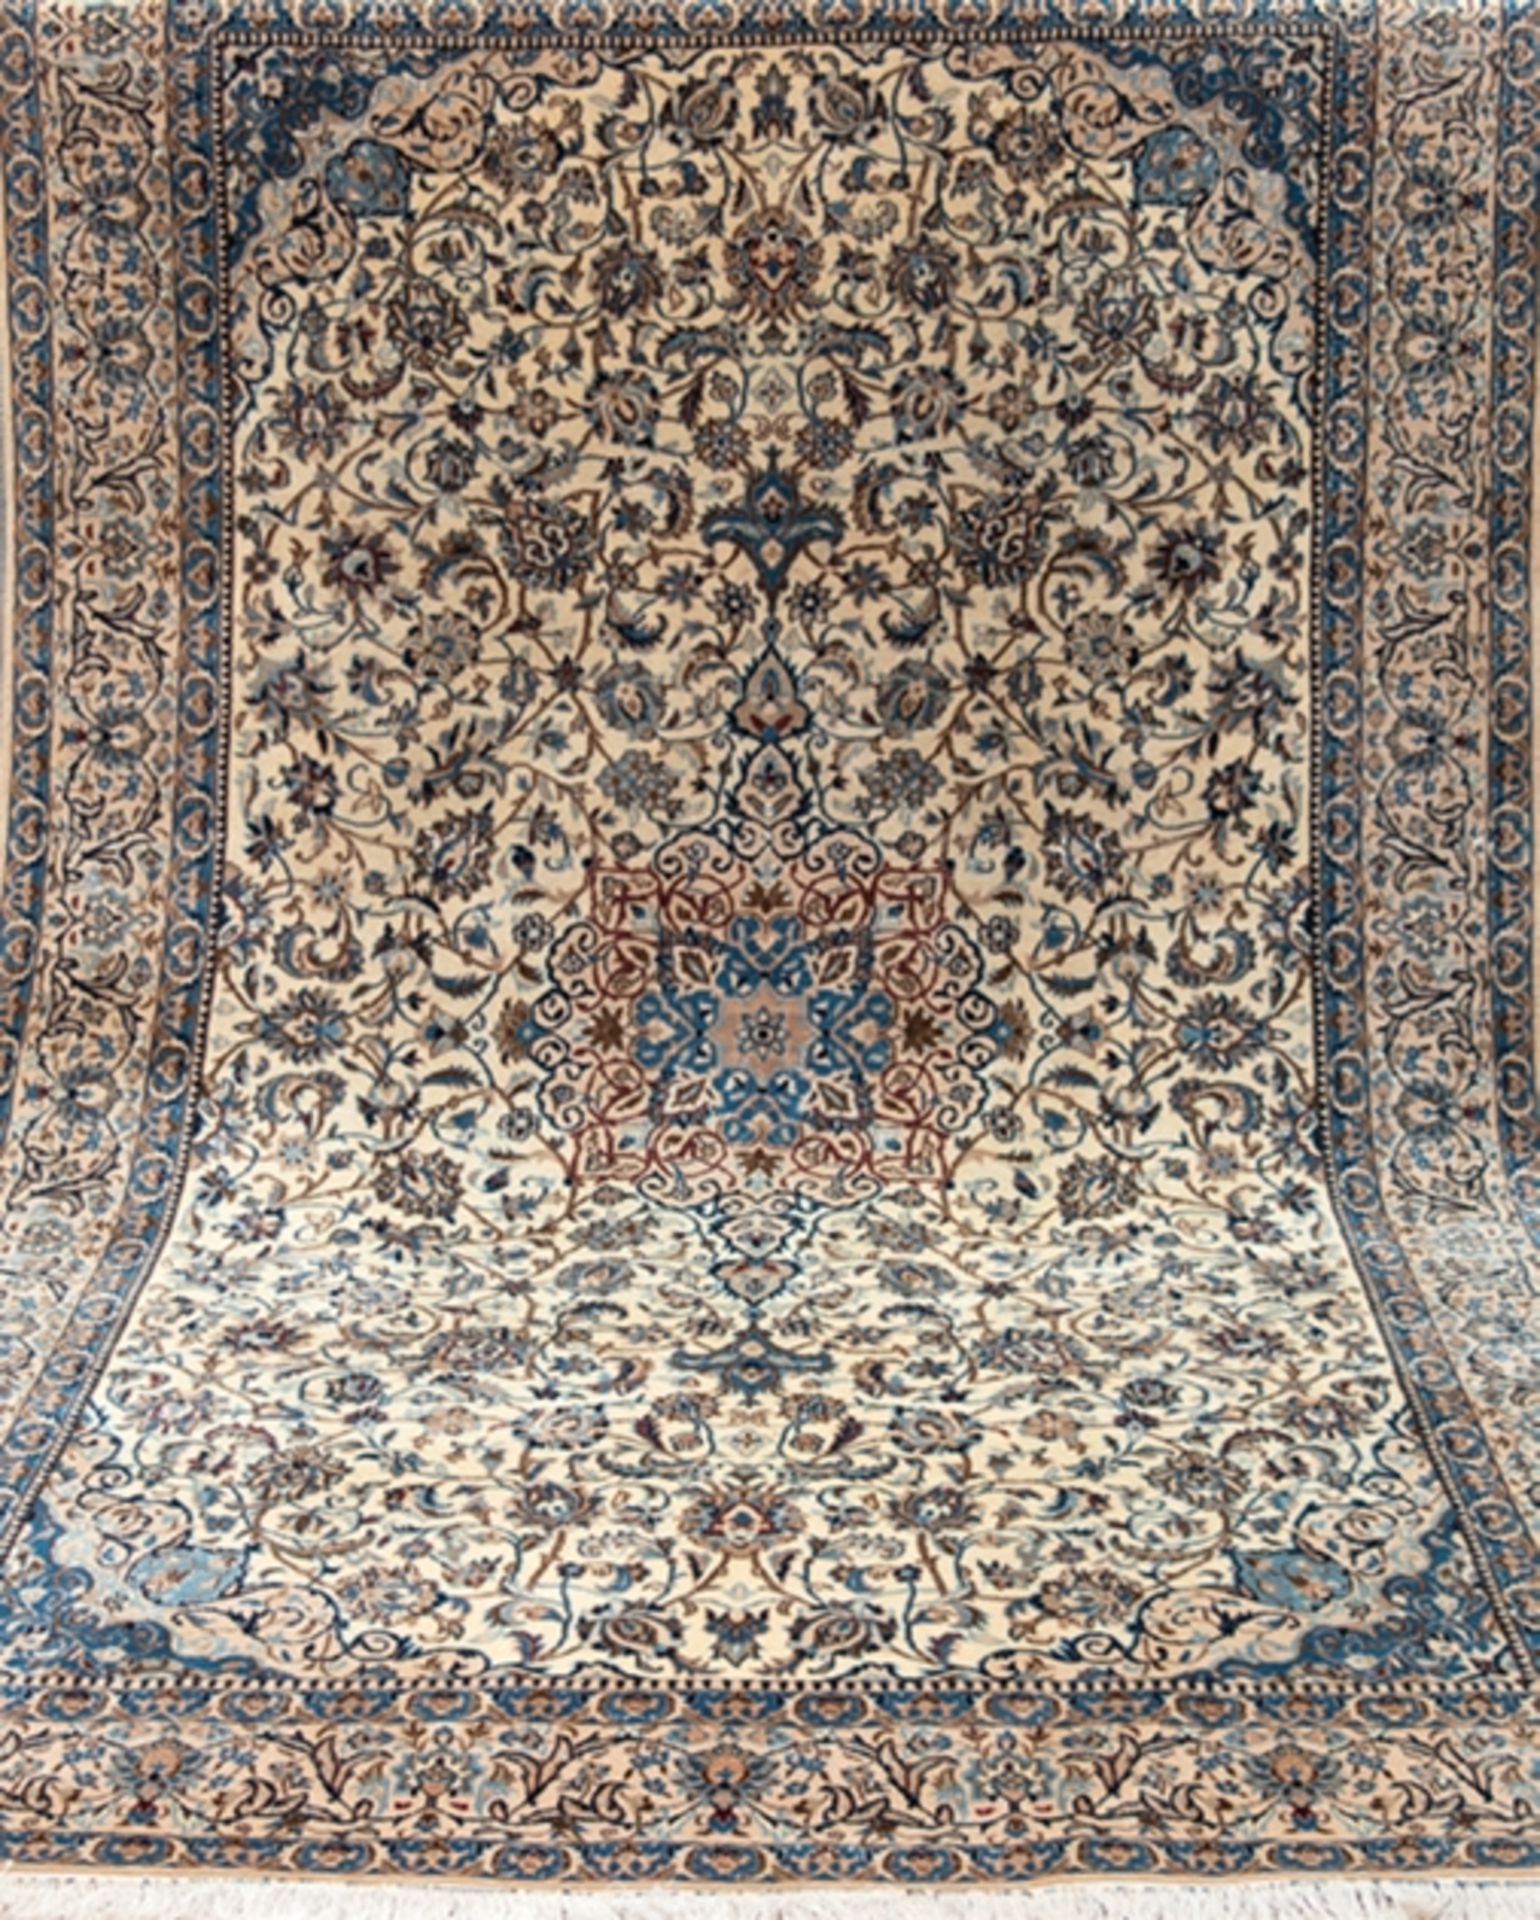 Teppich, Nepal, blaugrundig, mit Ornamenten, 250x180 cm